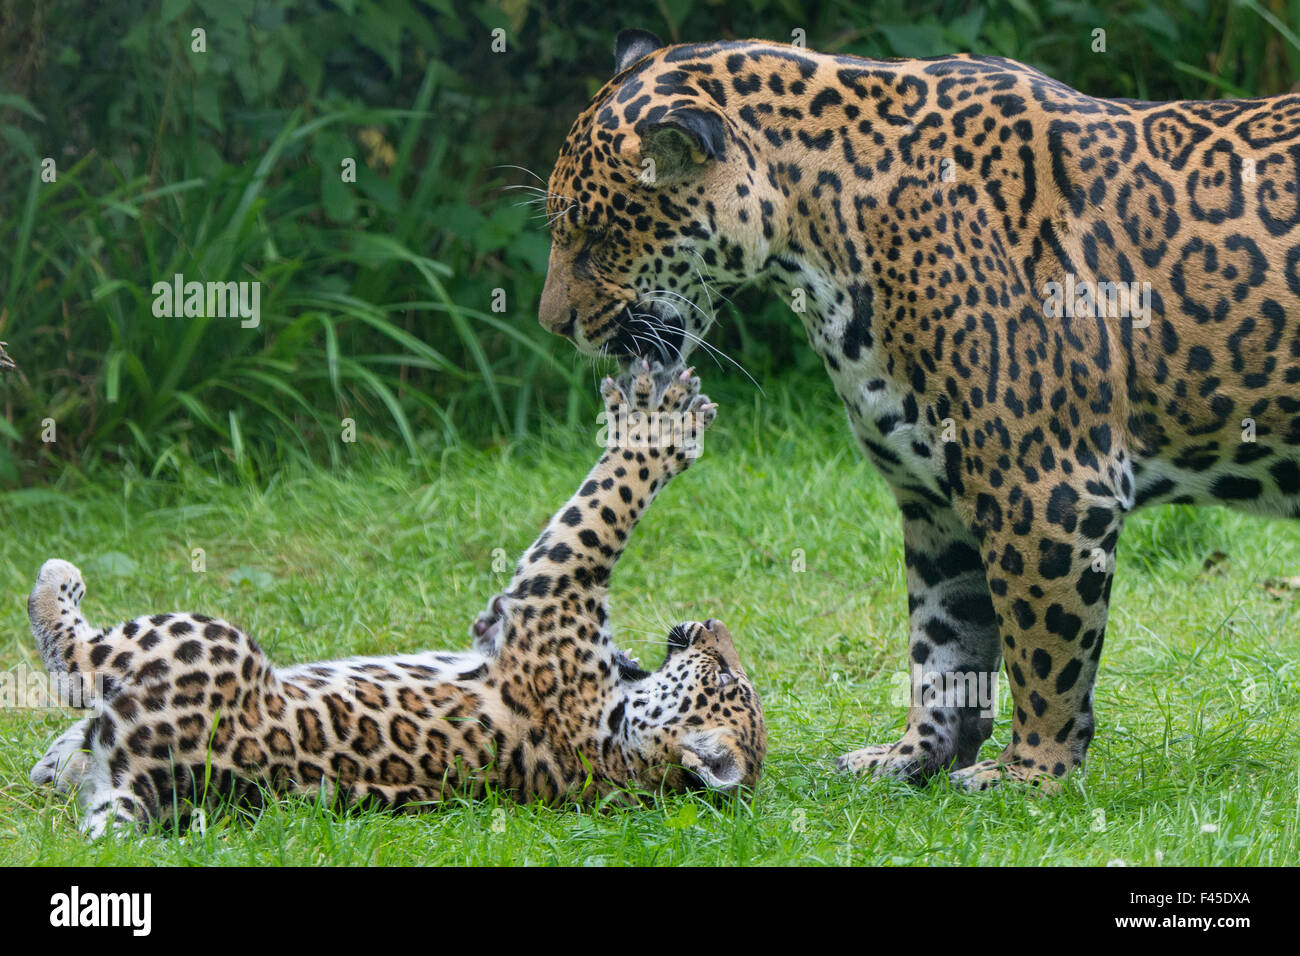 Hembra de jaguar (Panthera onca) jugando con su cachorro, cautiva, se produce en el Sur y Centroamérica. Foto de stock